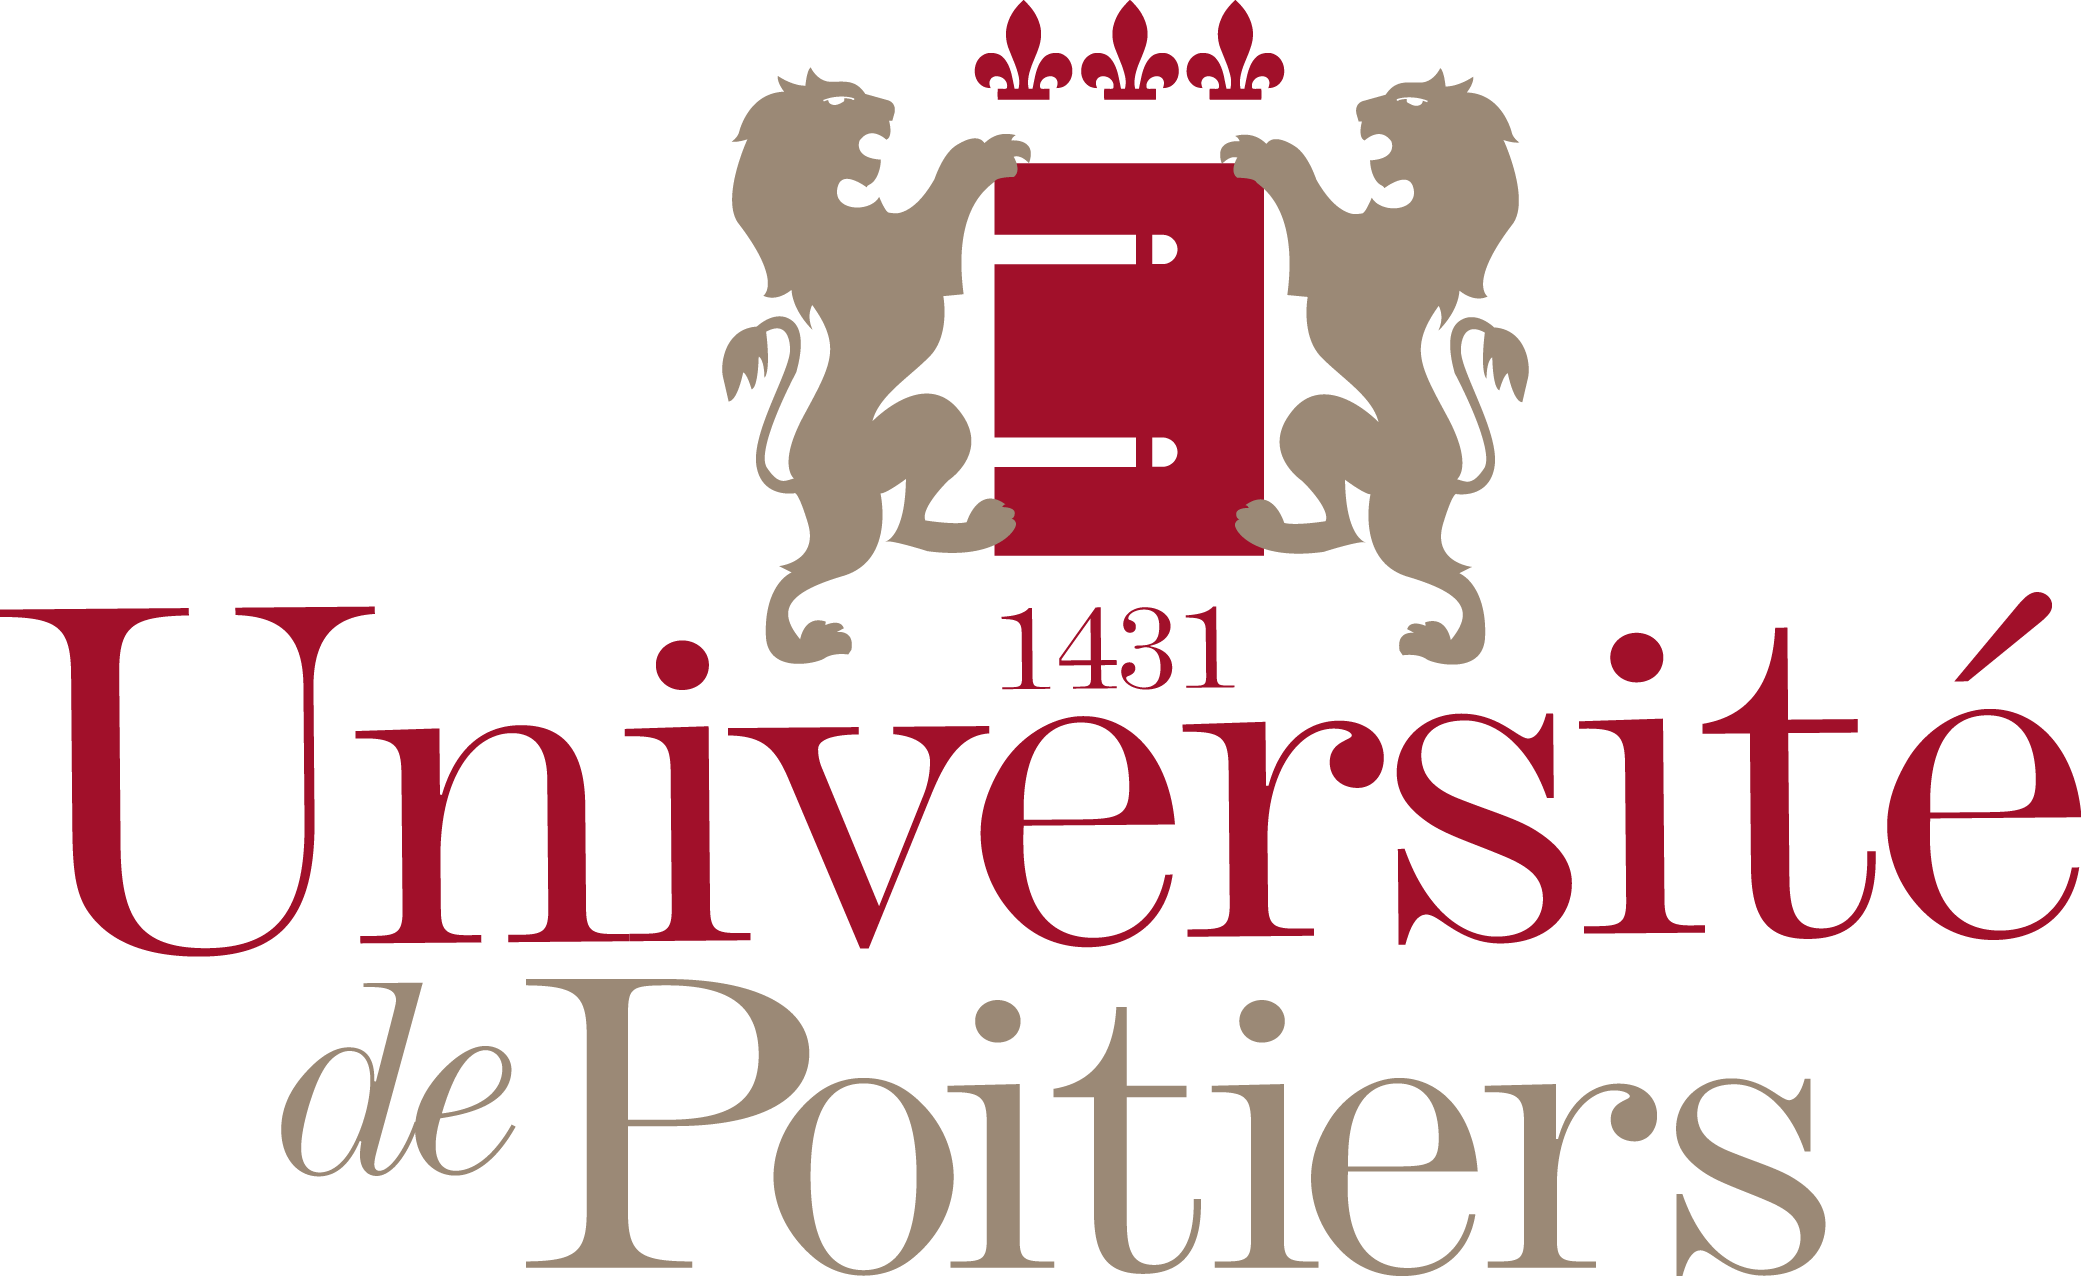 Logo de l'université de Poitiers